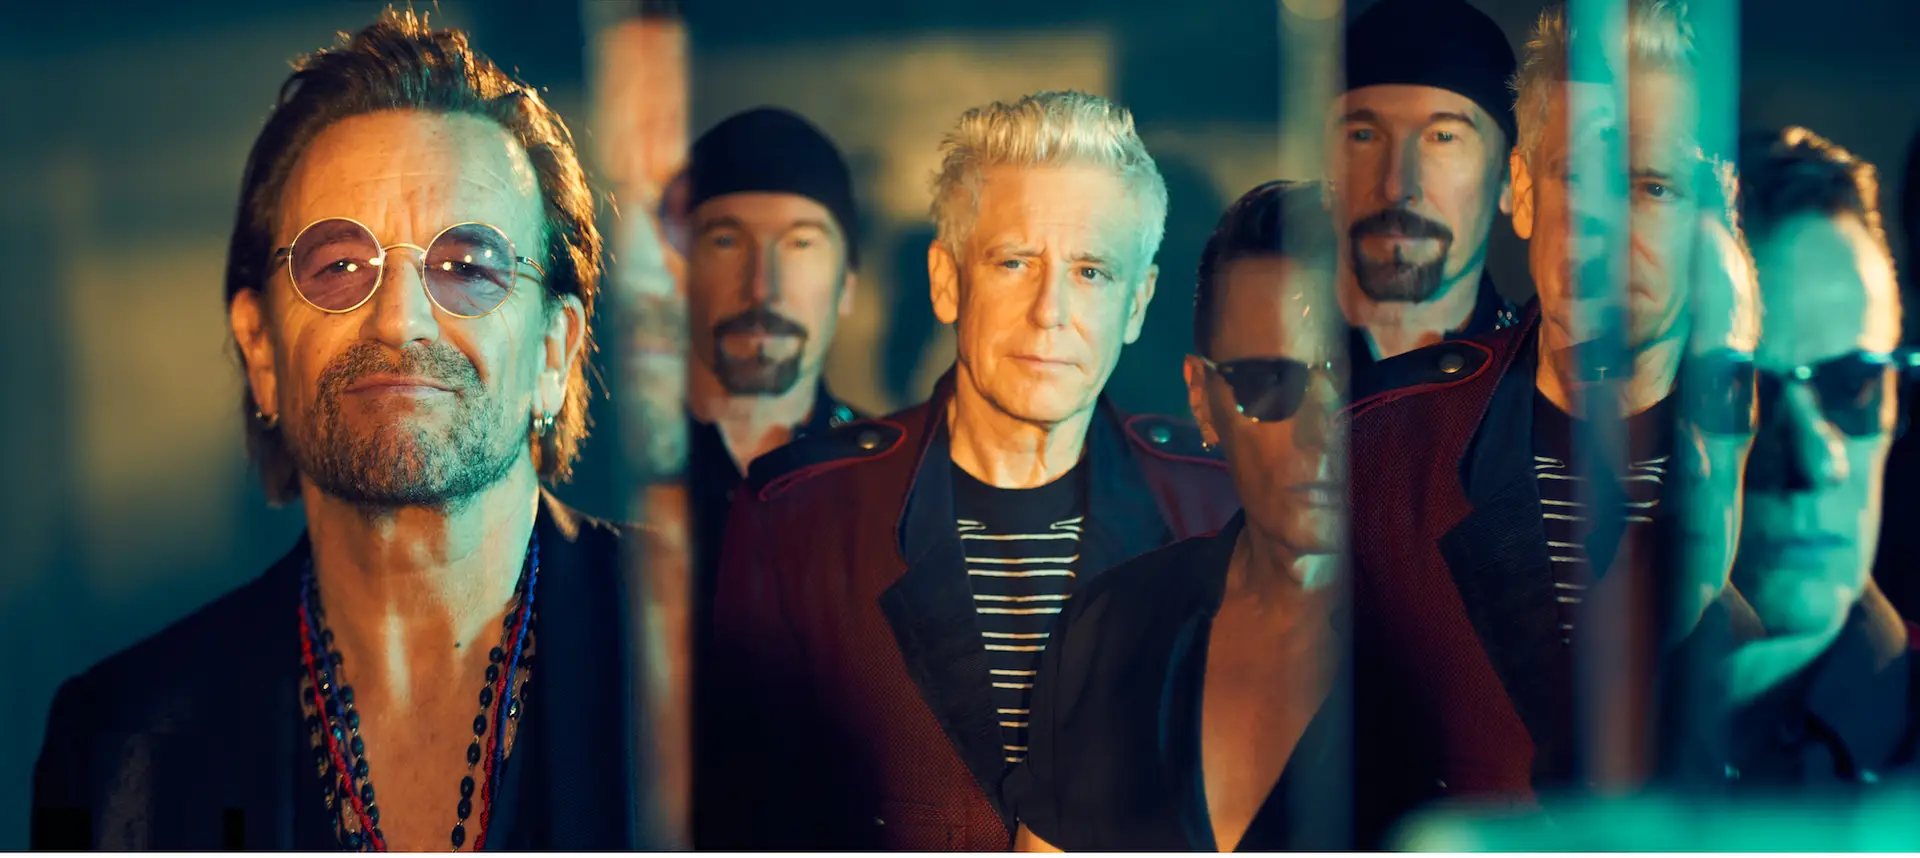 Os U2 vão inaugurar a sala de espetáculos mais futurista do mundo